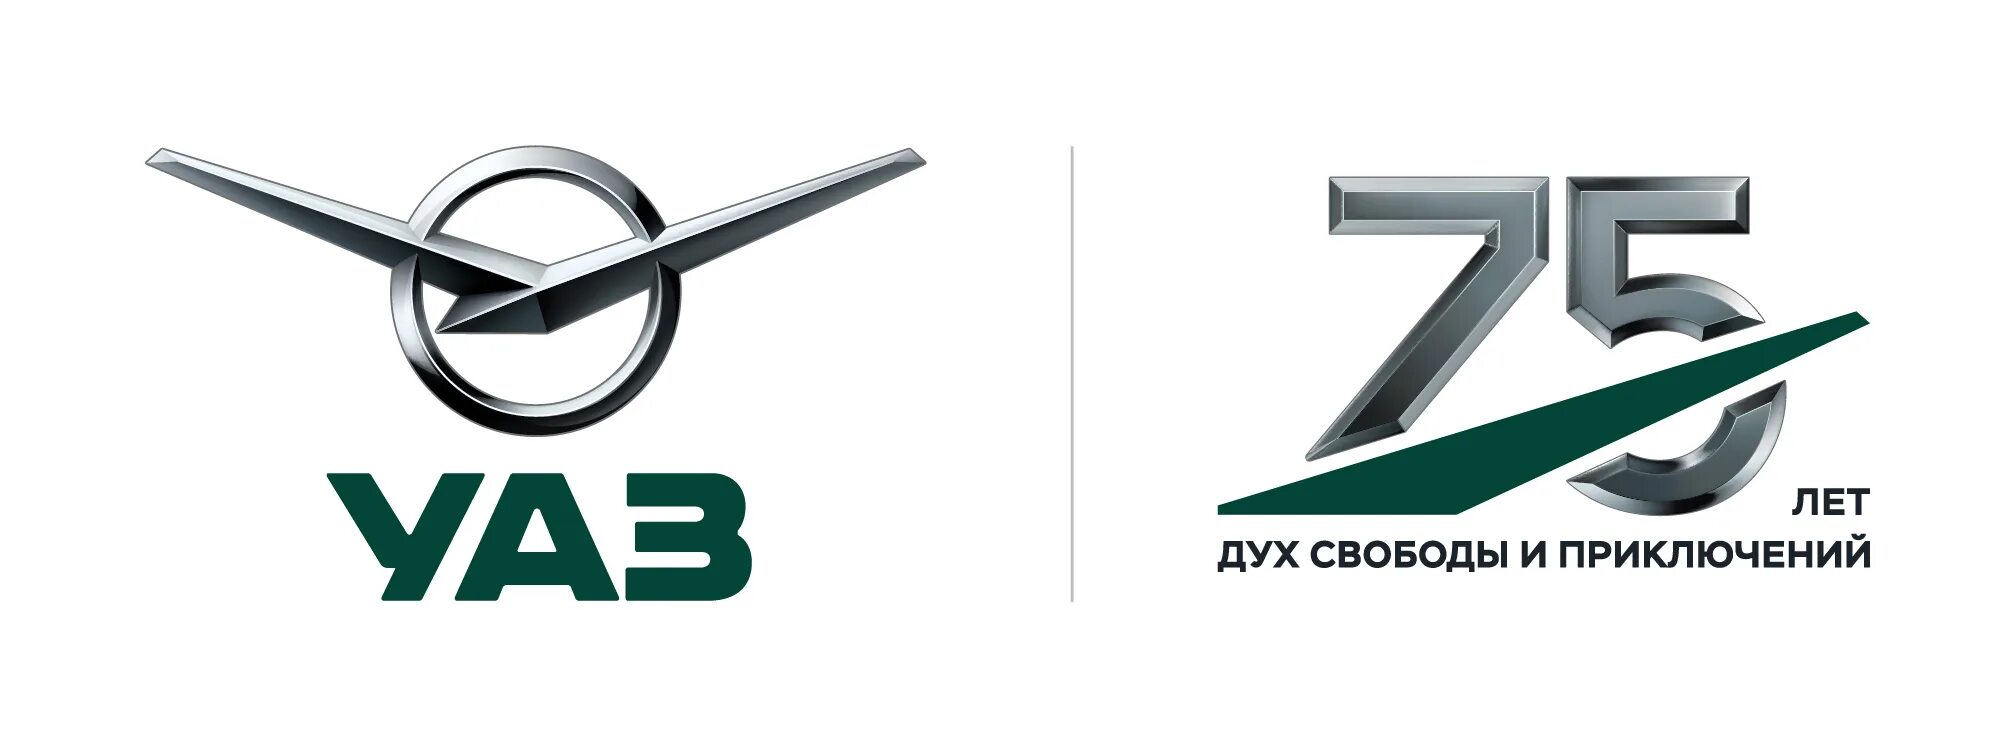 Что символизирует логотип уаз в ульяновске стрелки